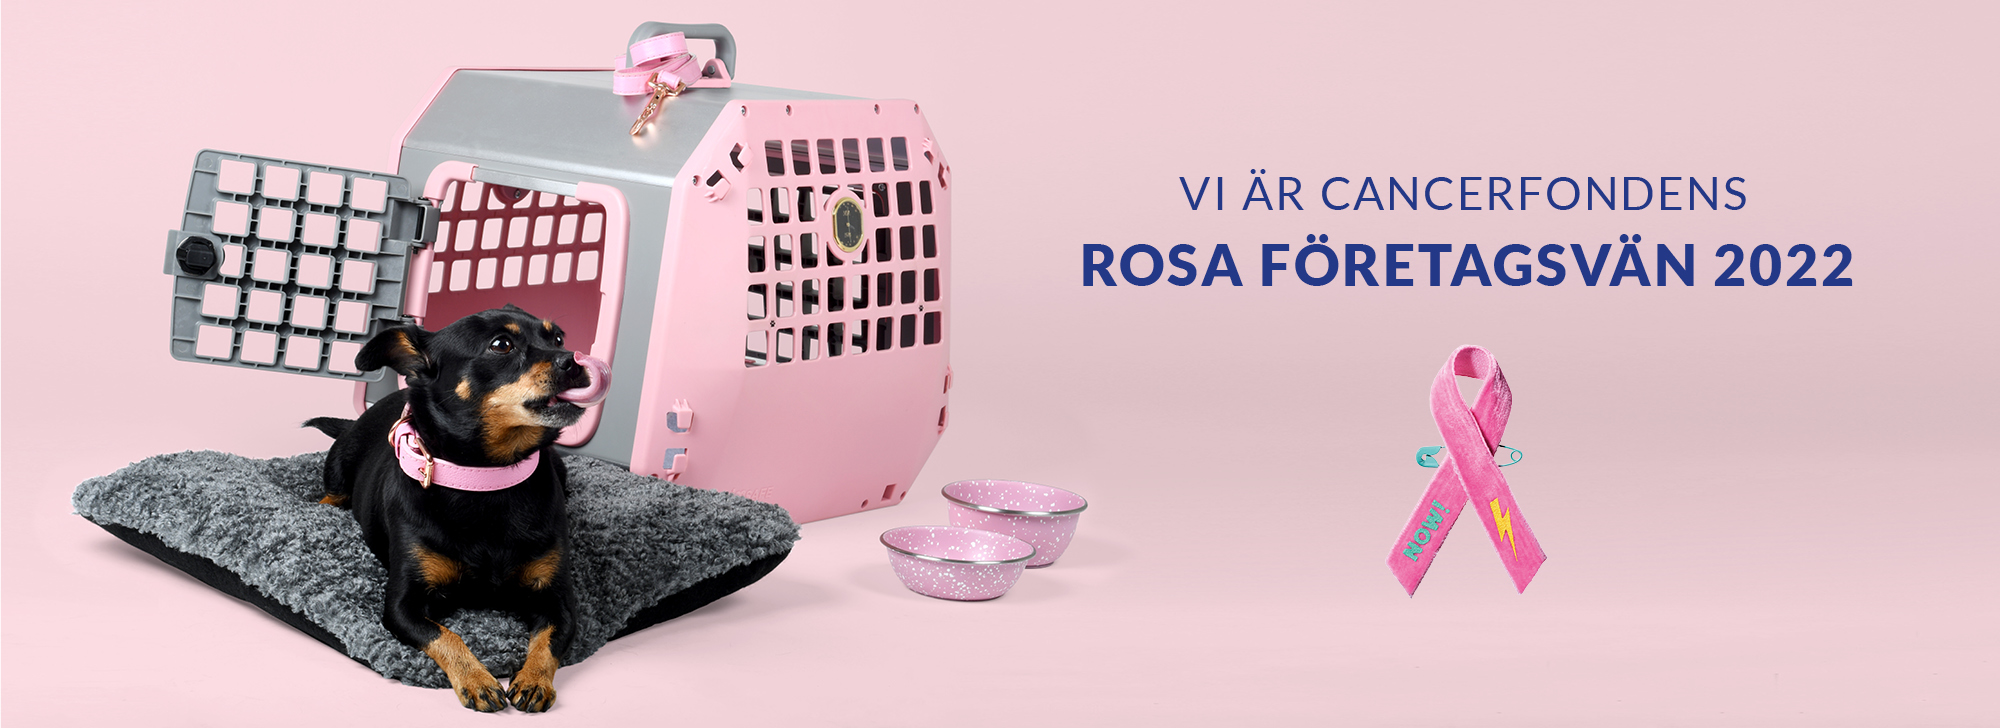 Rosa Bandet Företagsvän 2022 MIMsafe Care2 kampanj.